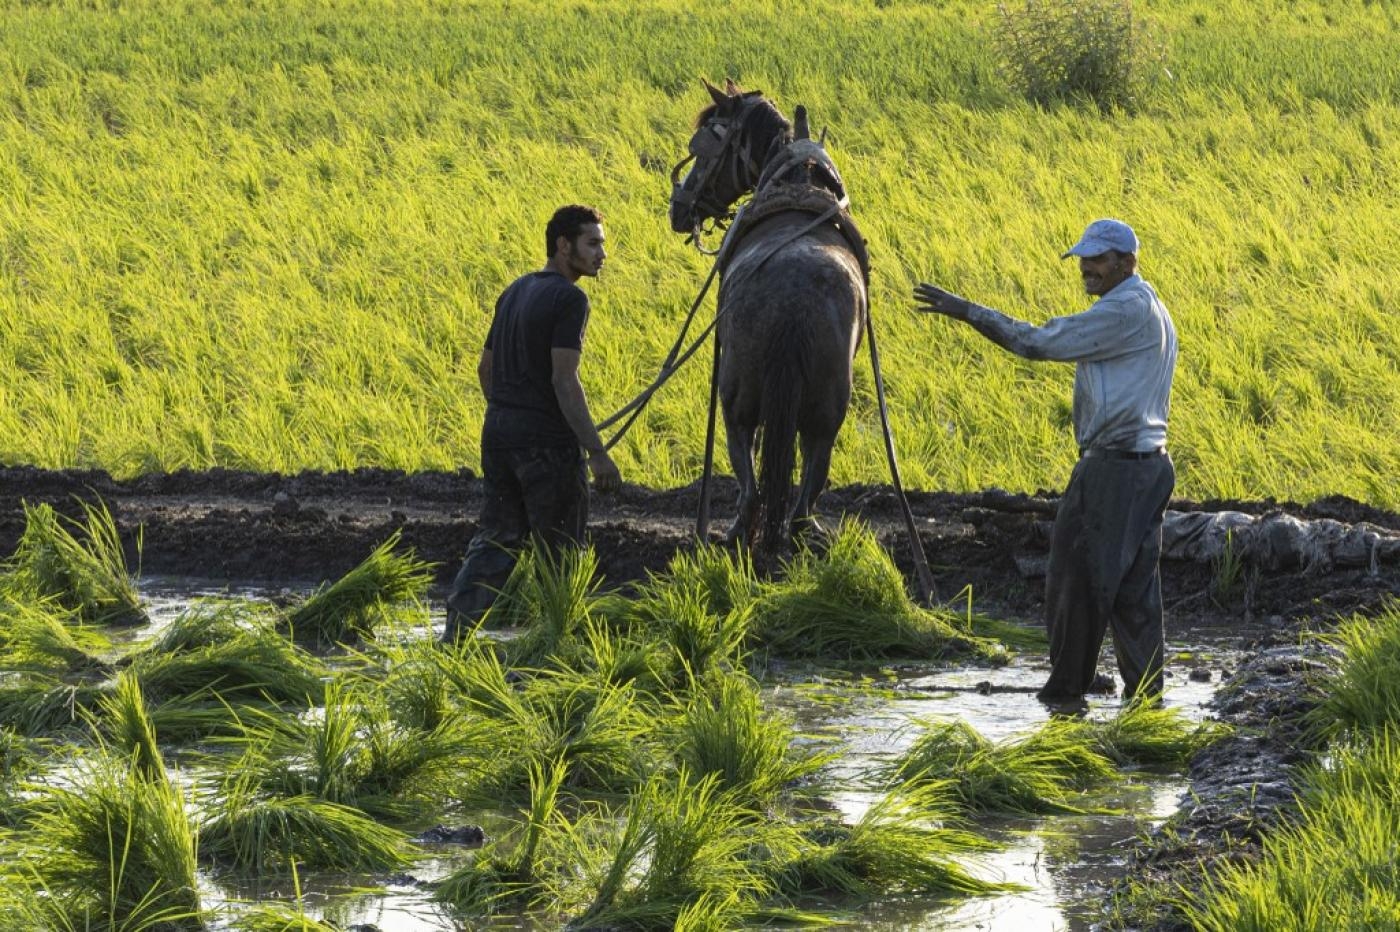 Des agriculteurs égyptiens plantent du riz dans un champ du village de Mit al-Ezz, près de la ville de Mit Ghamr dans le delta du Nil, à environ 80 km au nord de la capitale, le 25 juin 2022 (AFP)